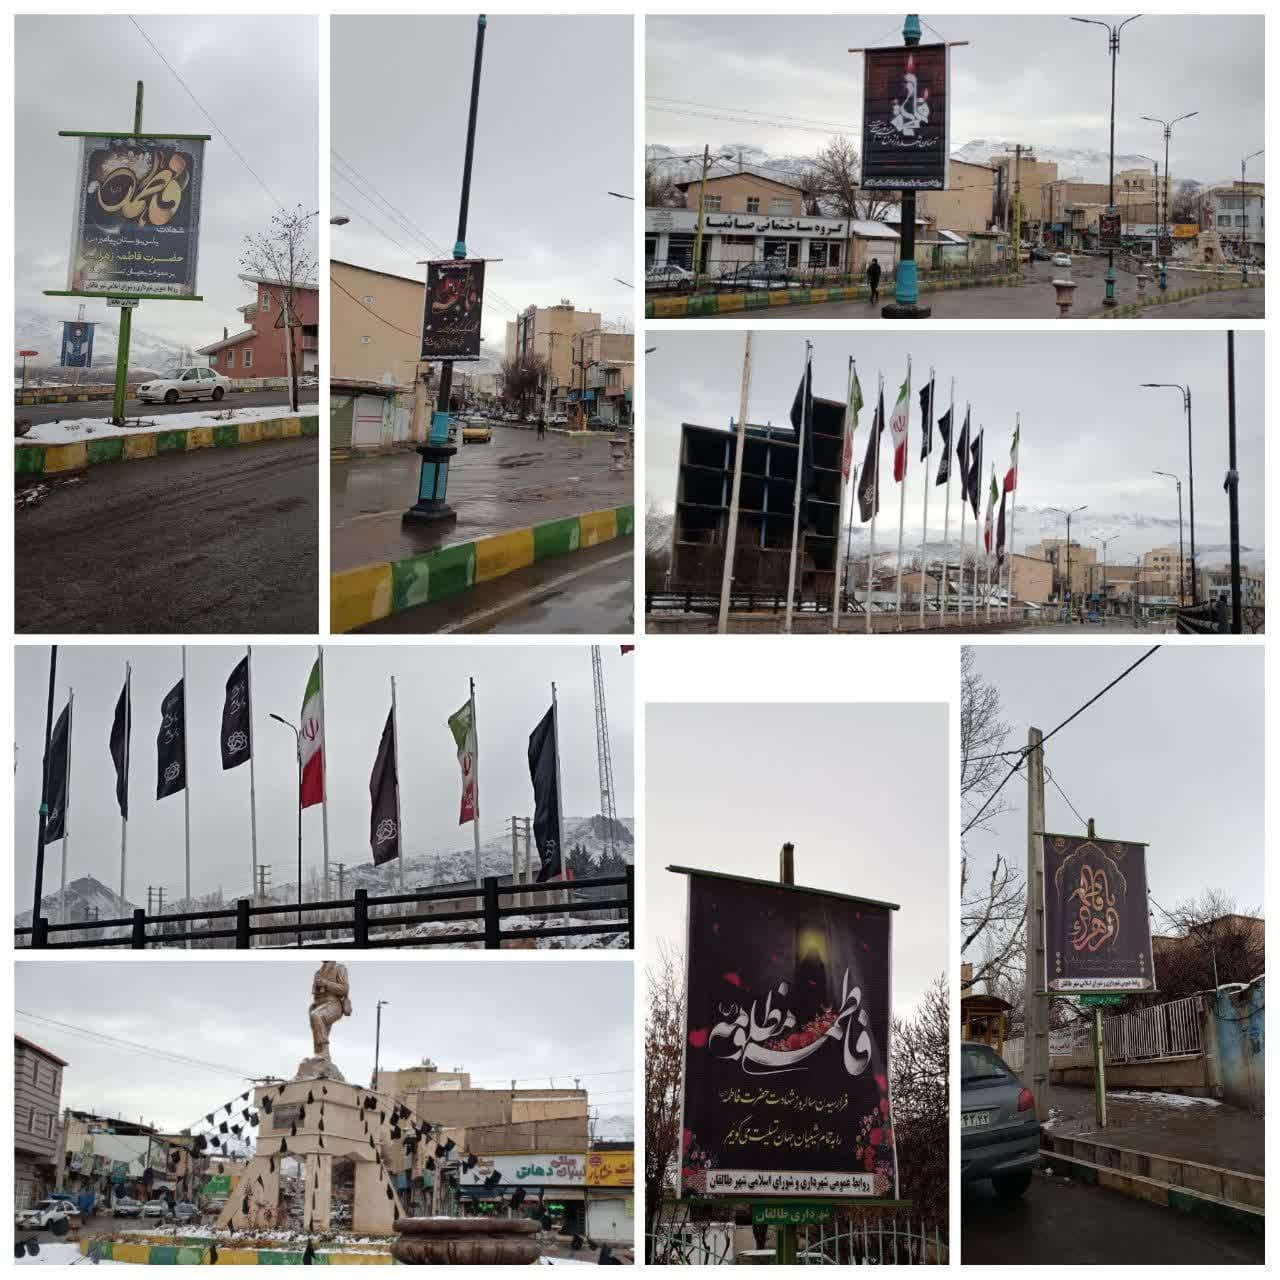 سیاه پوشانی (ریسه کشی, نصب بنر و پرچم) در سطح شهر به مناسبت شهادت حضرت فاطمه(س)